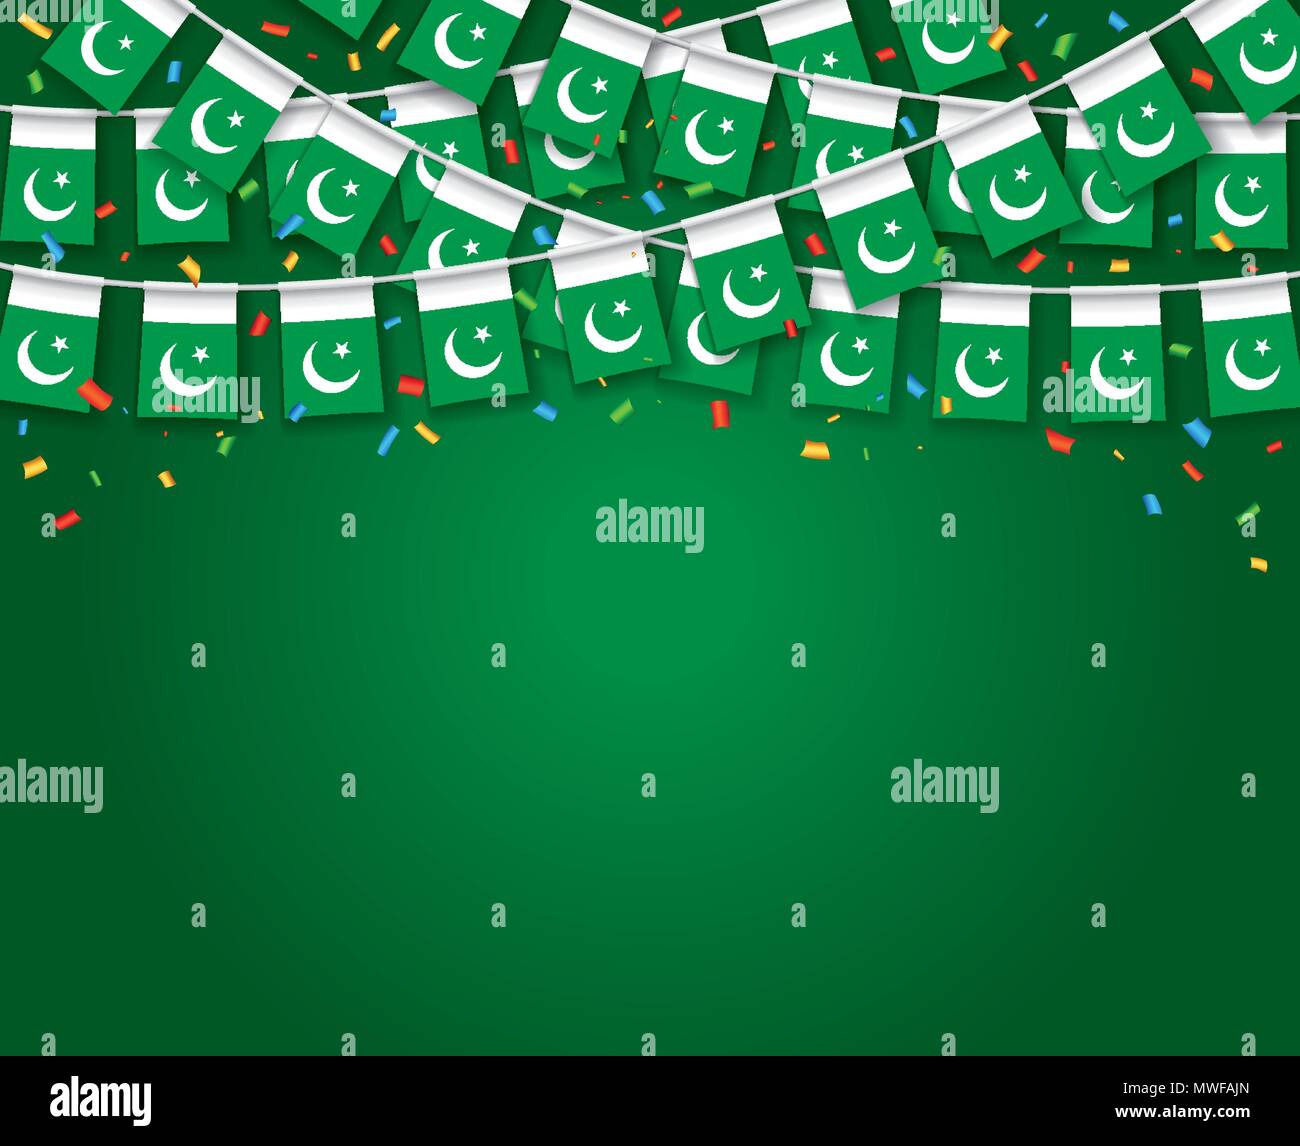 Girlande Flags mit dunkelgrünem Hintergrund Banner, hängende Bunting Flags für Pakistan Independence Day Feier. Vector Illustration Stock Vektor